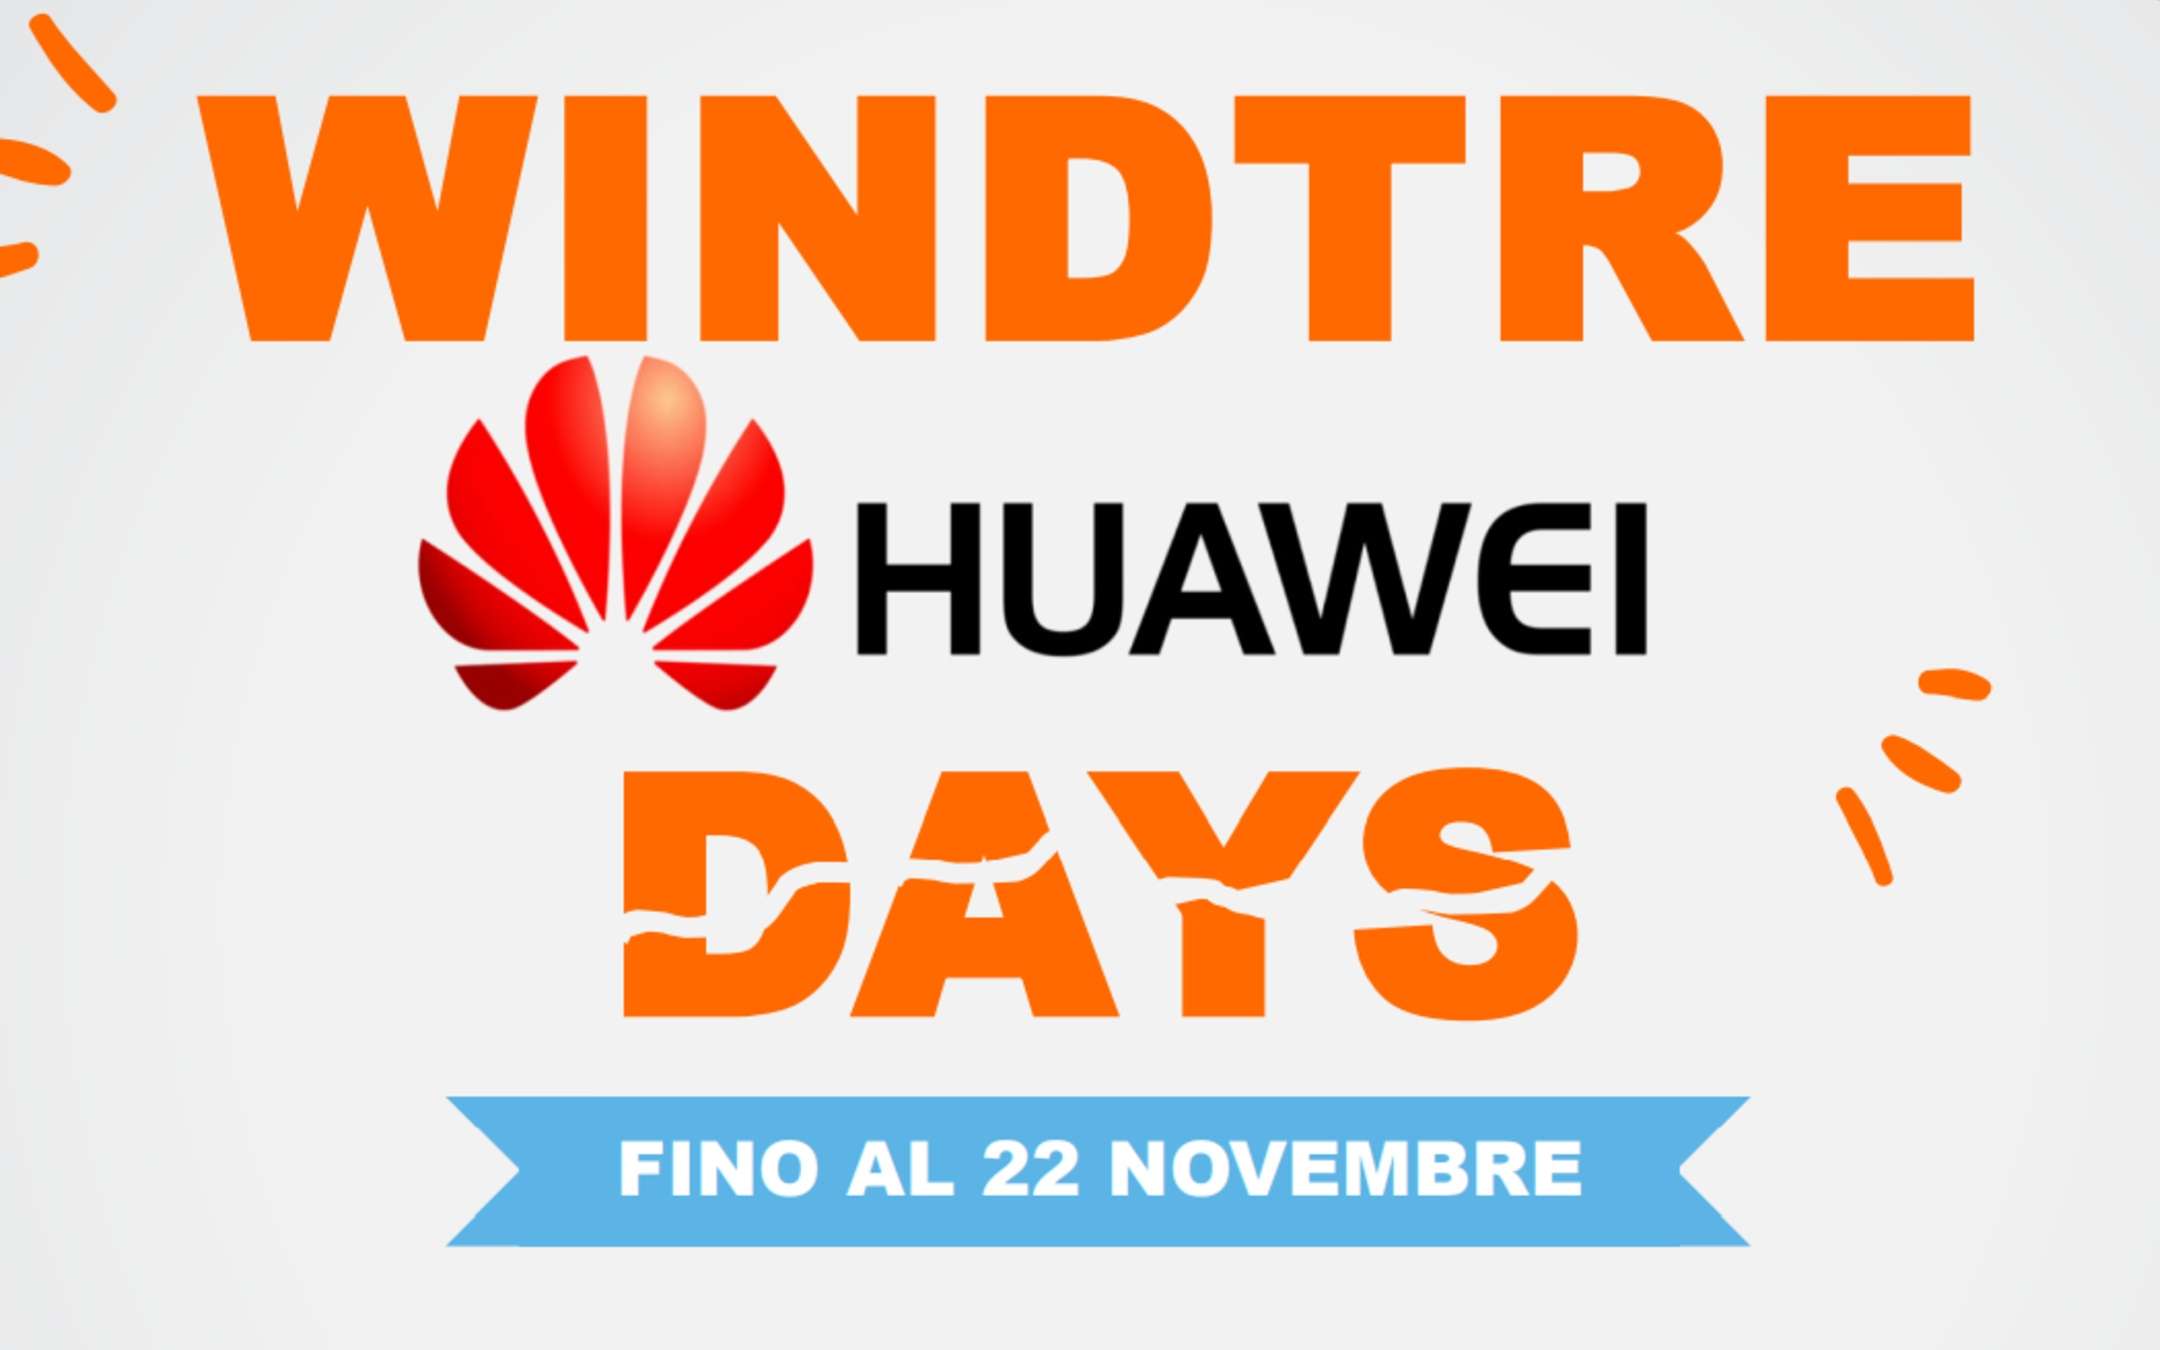 HUAWEI Days: sconti fino a 400€ con WINDTRE